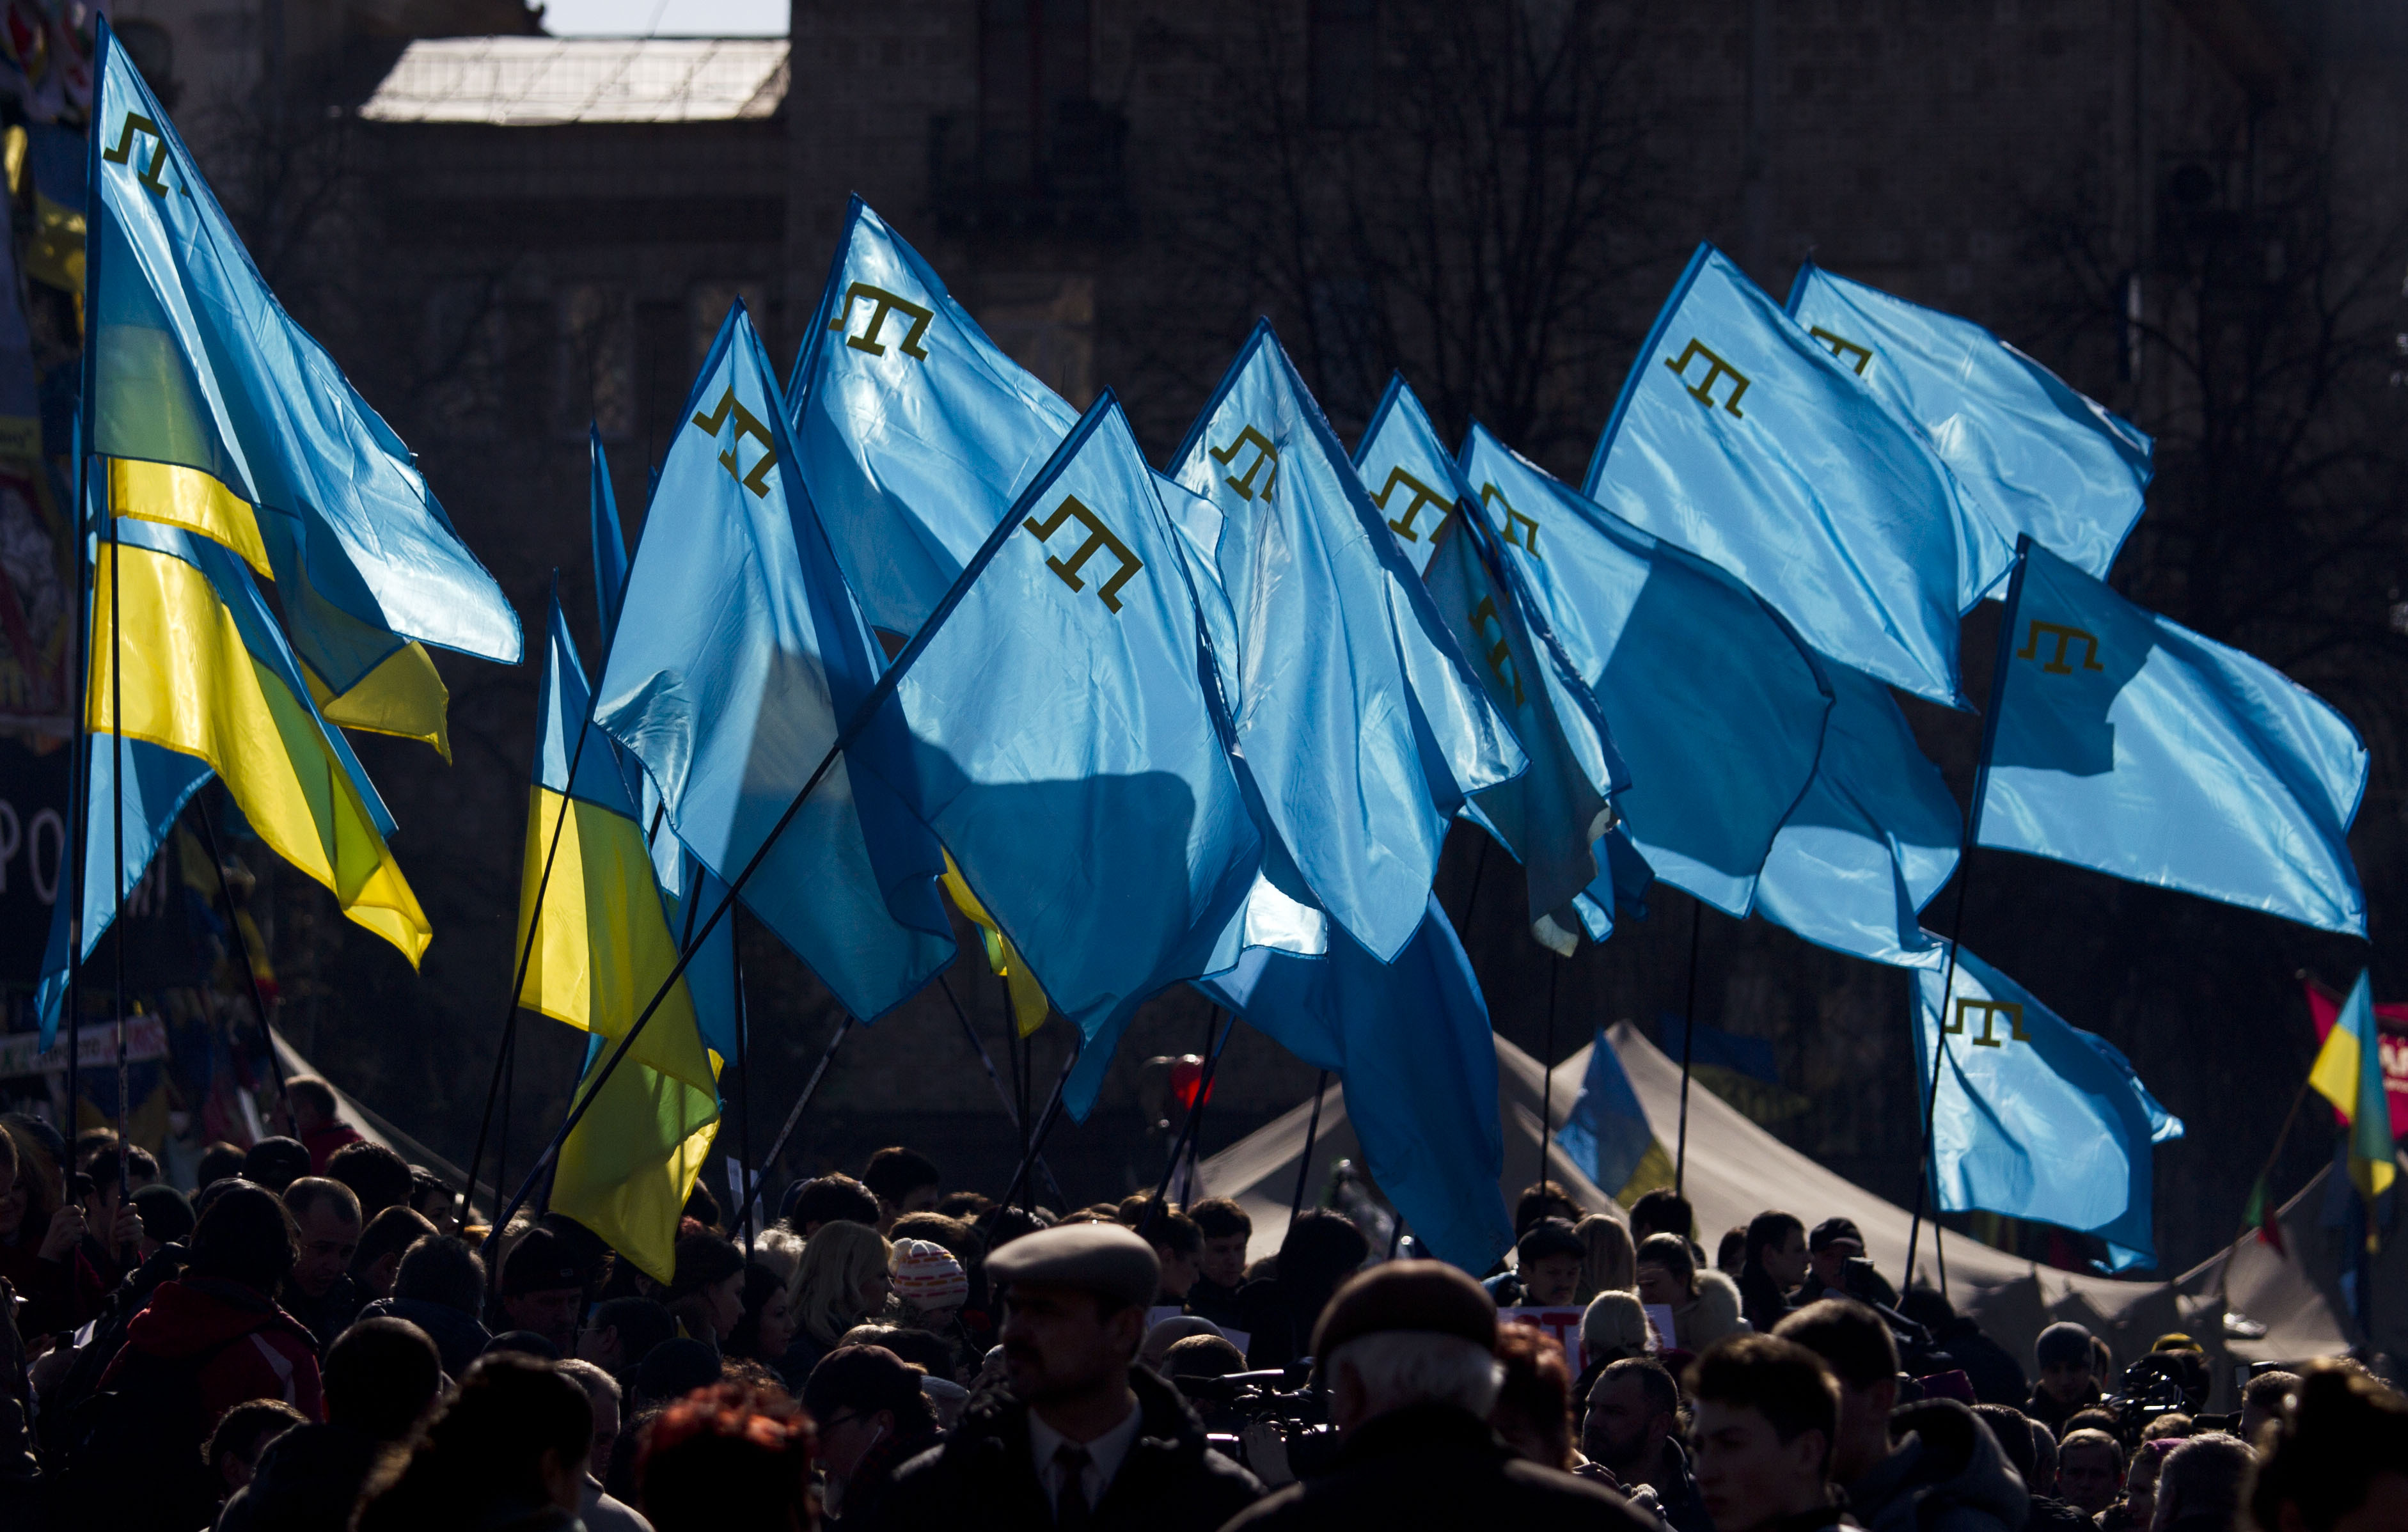 Demonstranten halten ukrainische und krimtatarische Flaggen während einer Demonstration zur Unterstützung der Krimtataren auf dem Unabhängigkeitsplatz in Kiew, Ukraine, Samstag, 8. März 2014. 